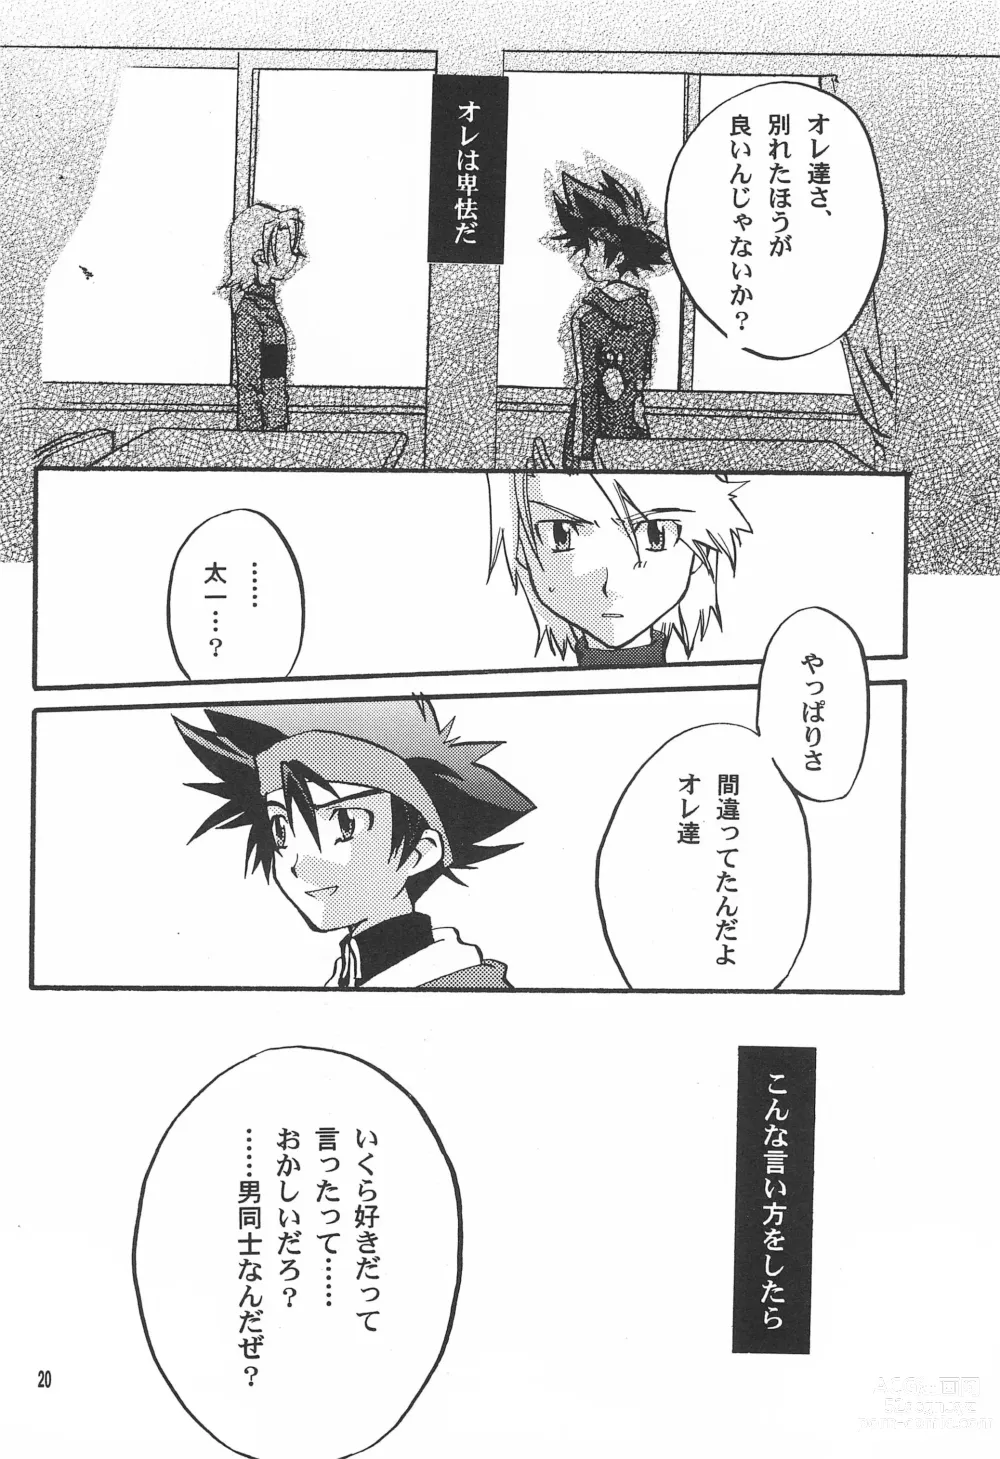 Page 22 of doujinshi Utsukushiki Samazama no Yume